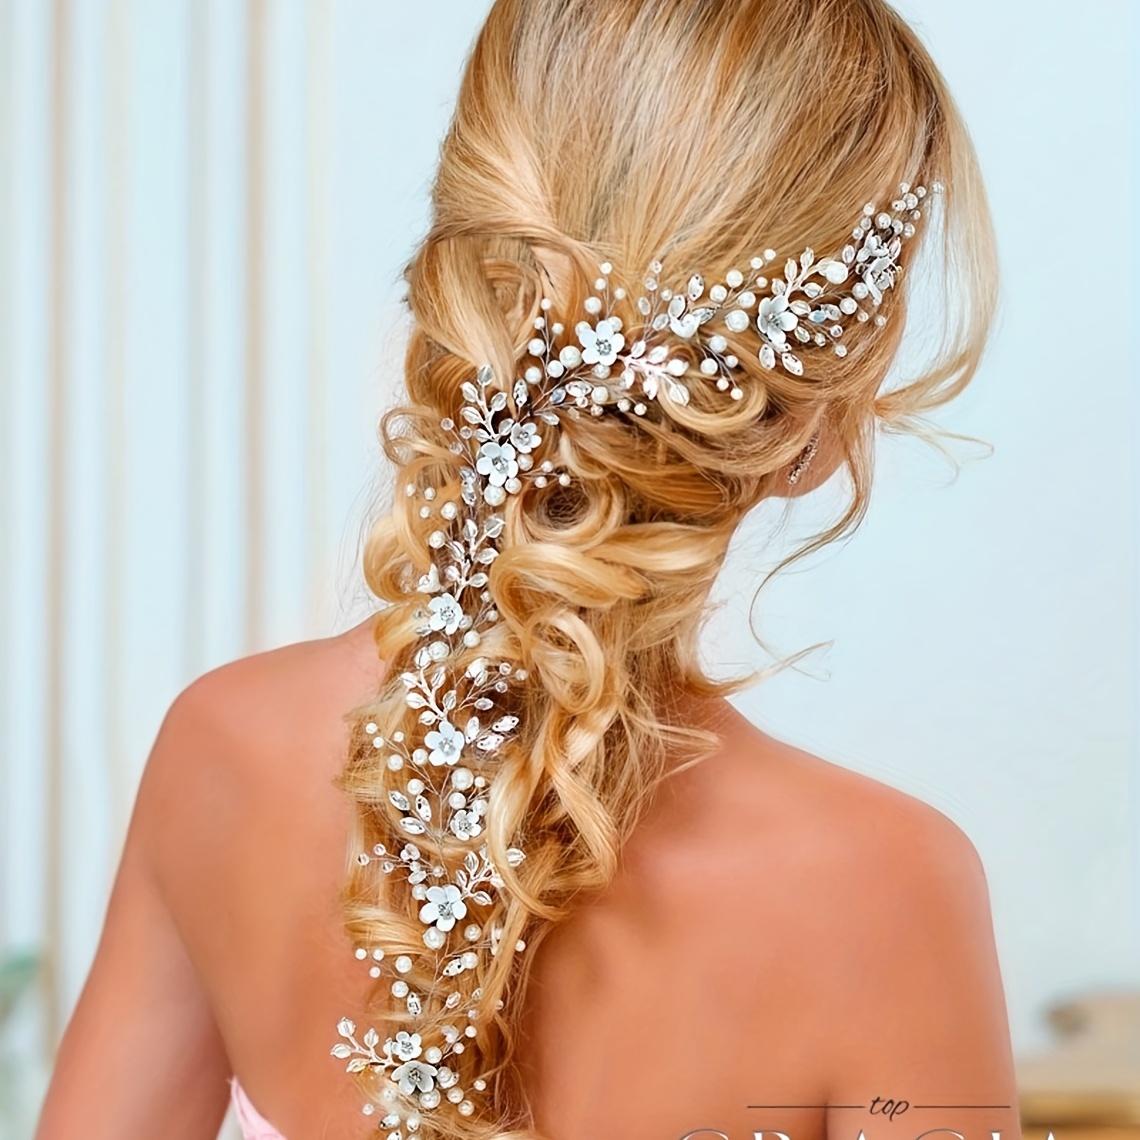 Bridal Hair Chain -  Canada